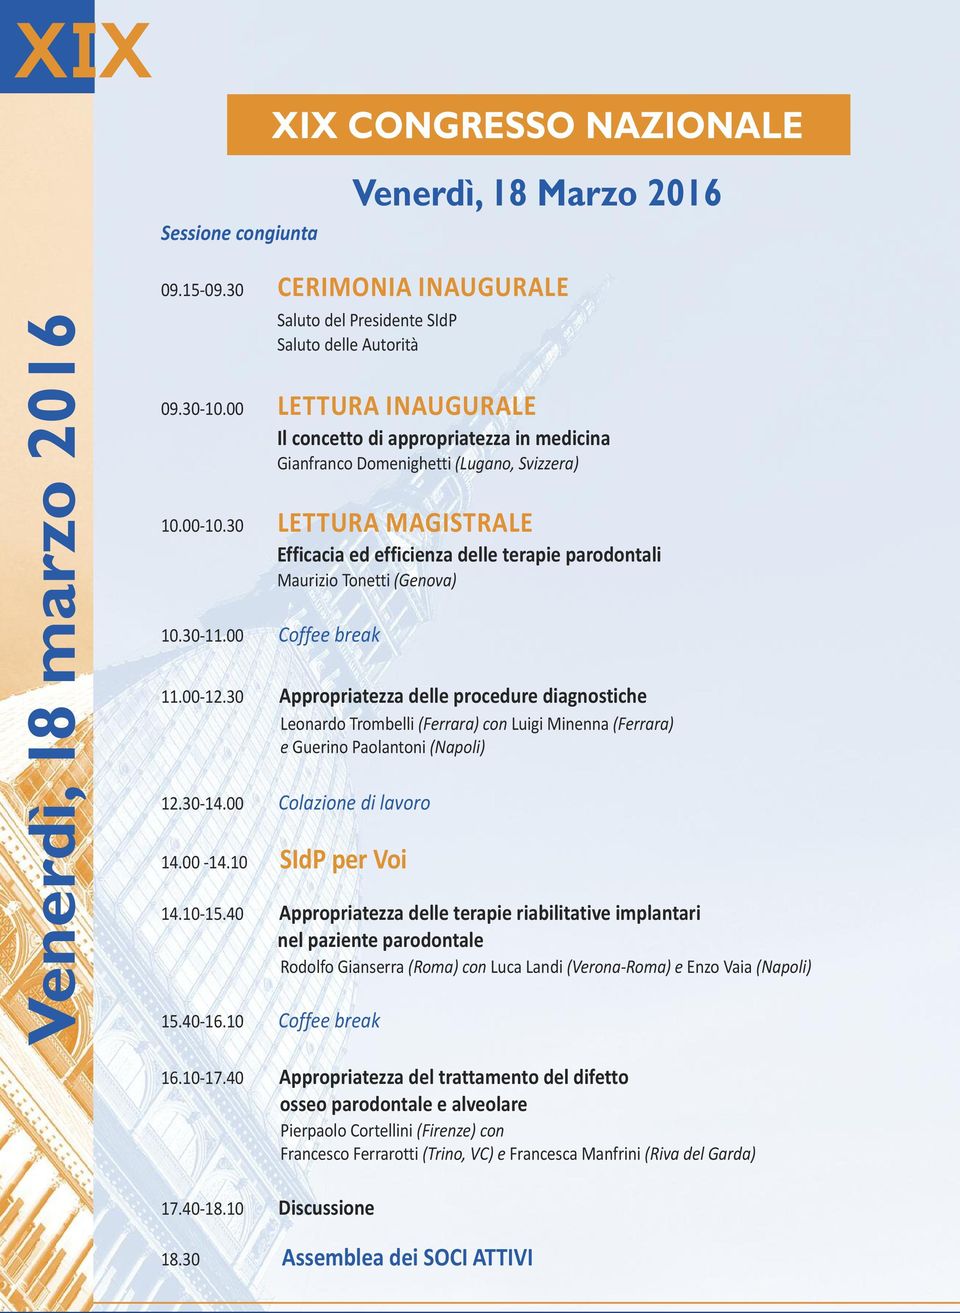 30 LETTURA MAGISTRALE Efficacia ed efficienza delle terapie parodontali Maurizio Tonetti (Genova) 10.30-11.00 Coffee break 11.00-12.